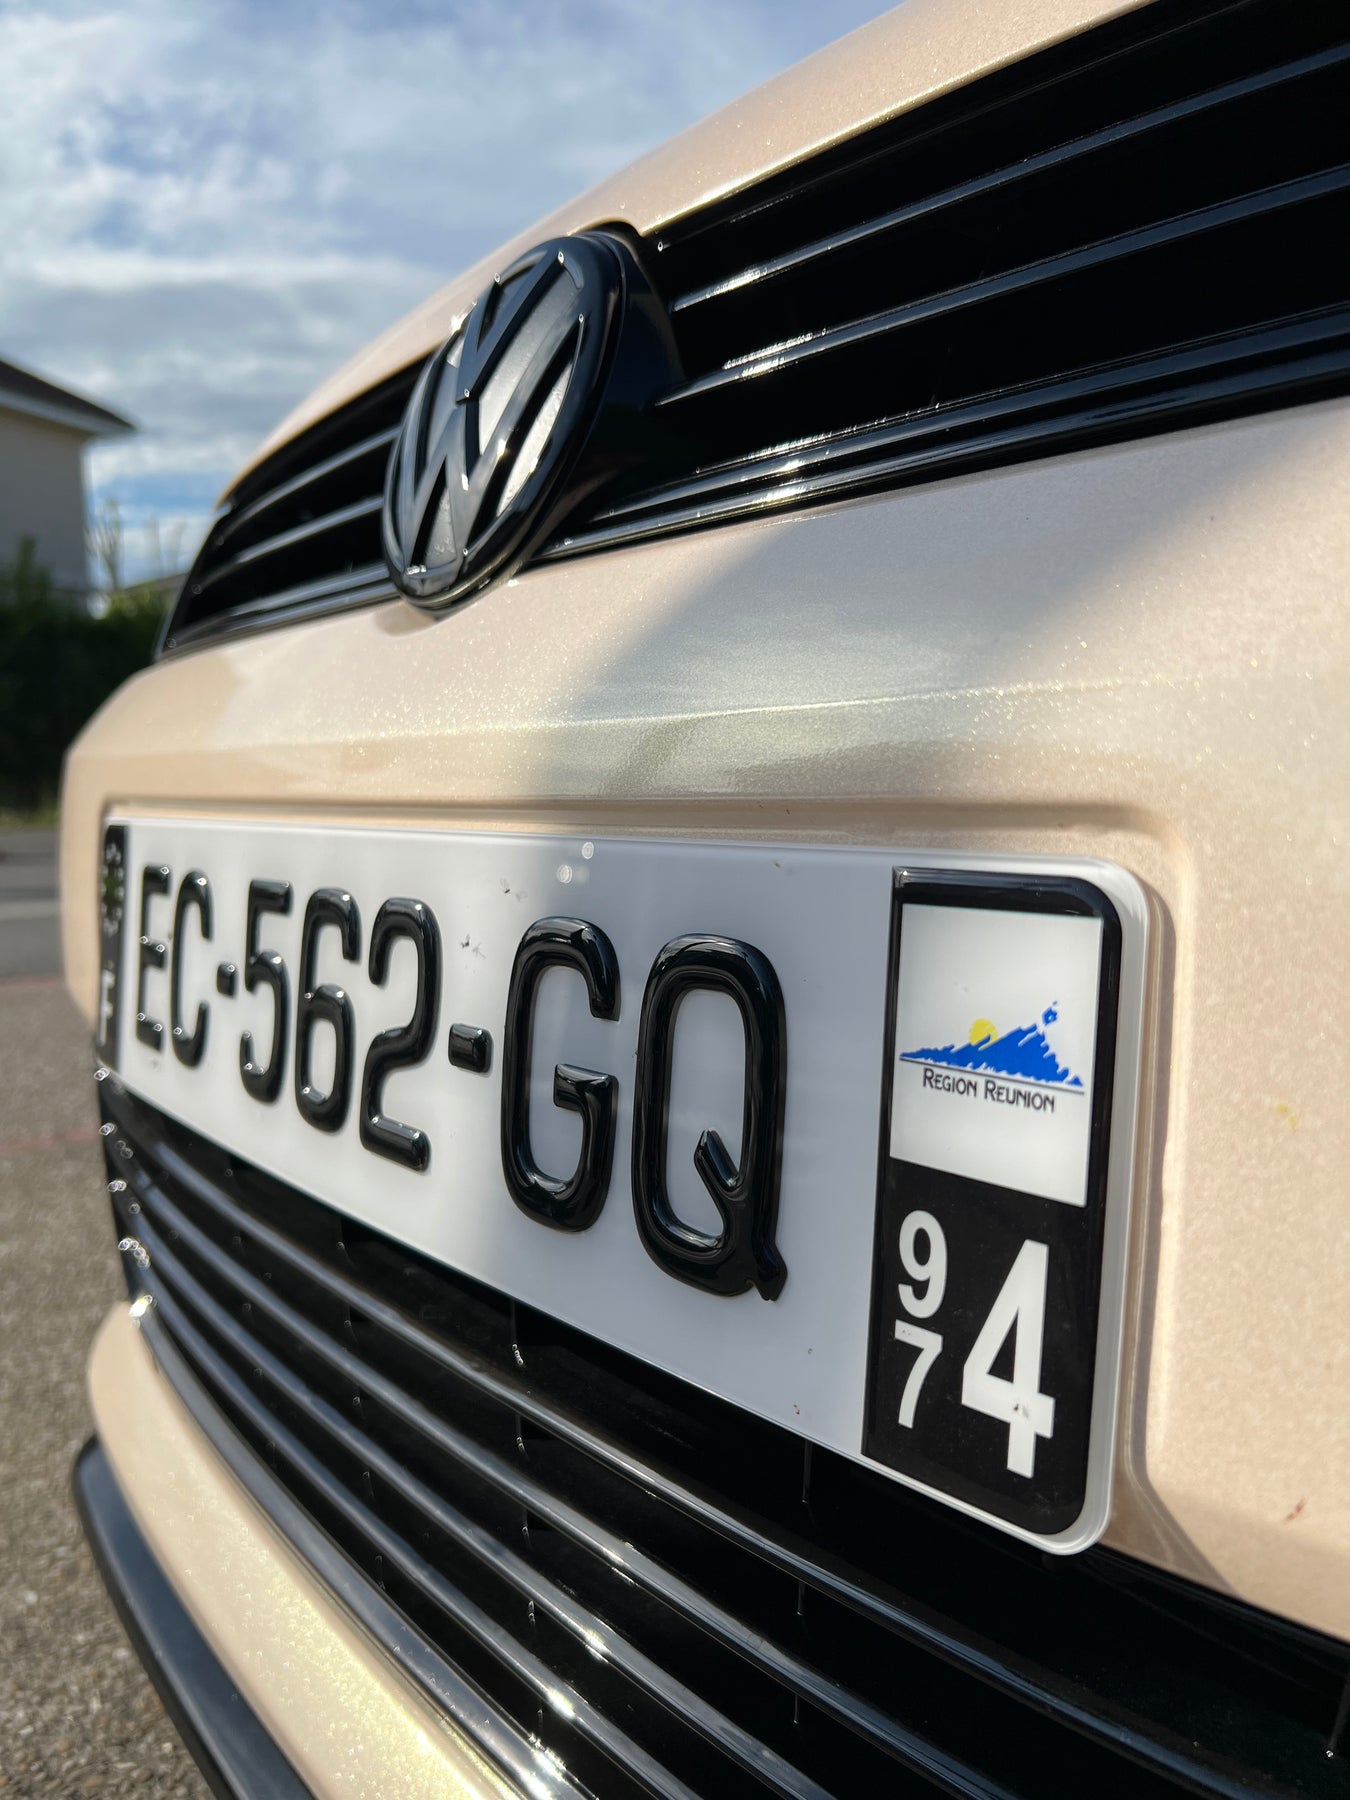 Housse de protection Clé pour VW Golf 7/7.5, Polo AW – VAG SHOP